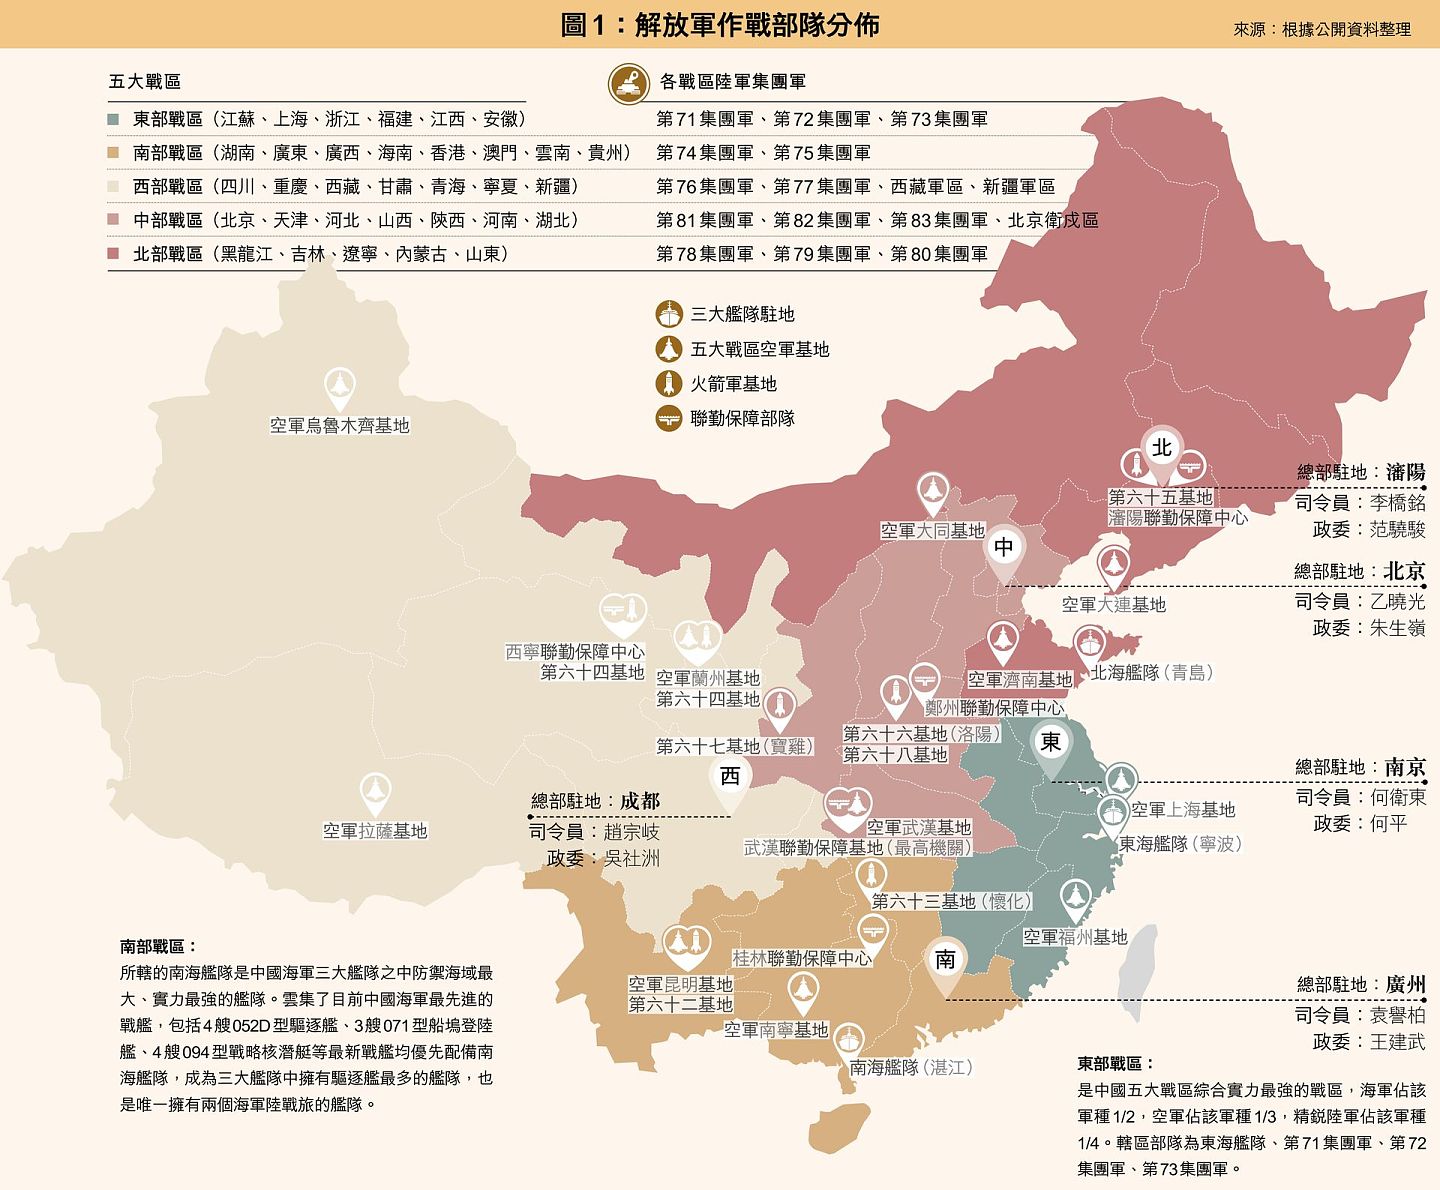 中国大陆解放军兵力分布图。（多维新闻制作）